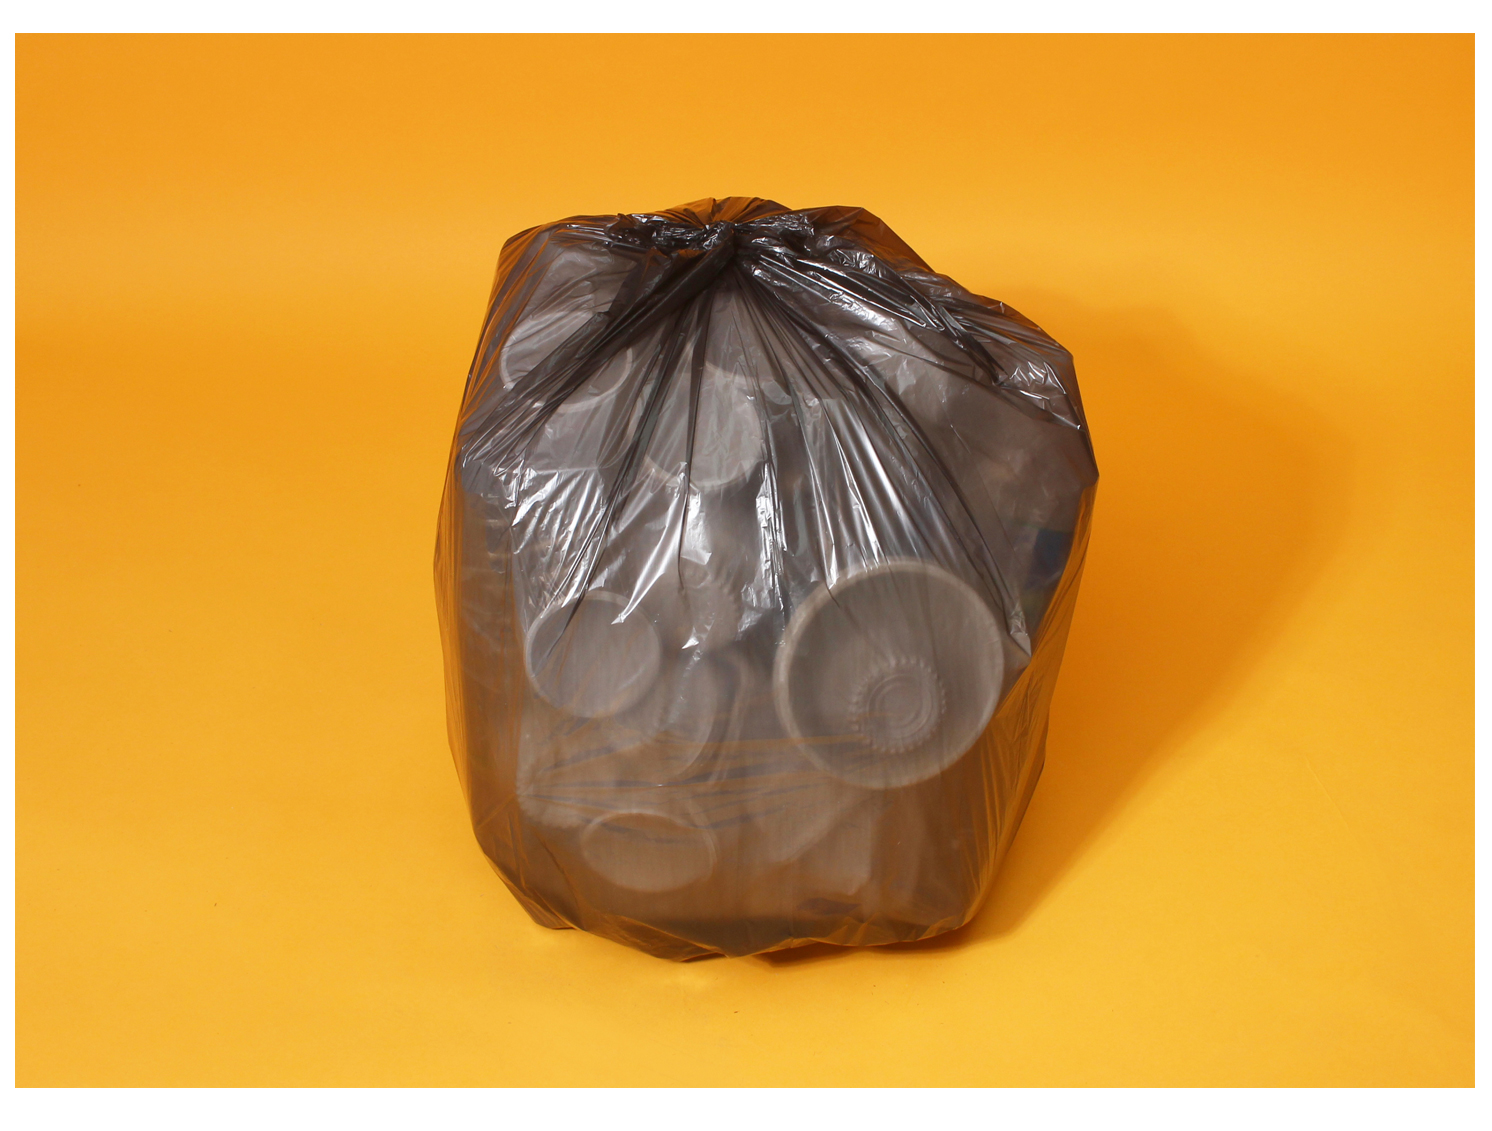 주황색 바탕화면에 쓰레기봉투에 재활용 플라스틱이 가득 담겨있다. 동그랗게 가득 묵여있는 모습이다.